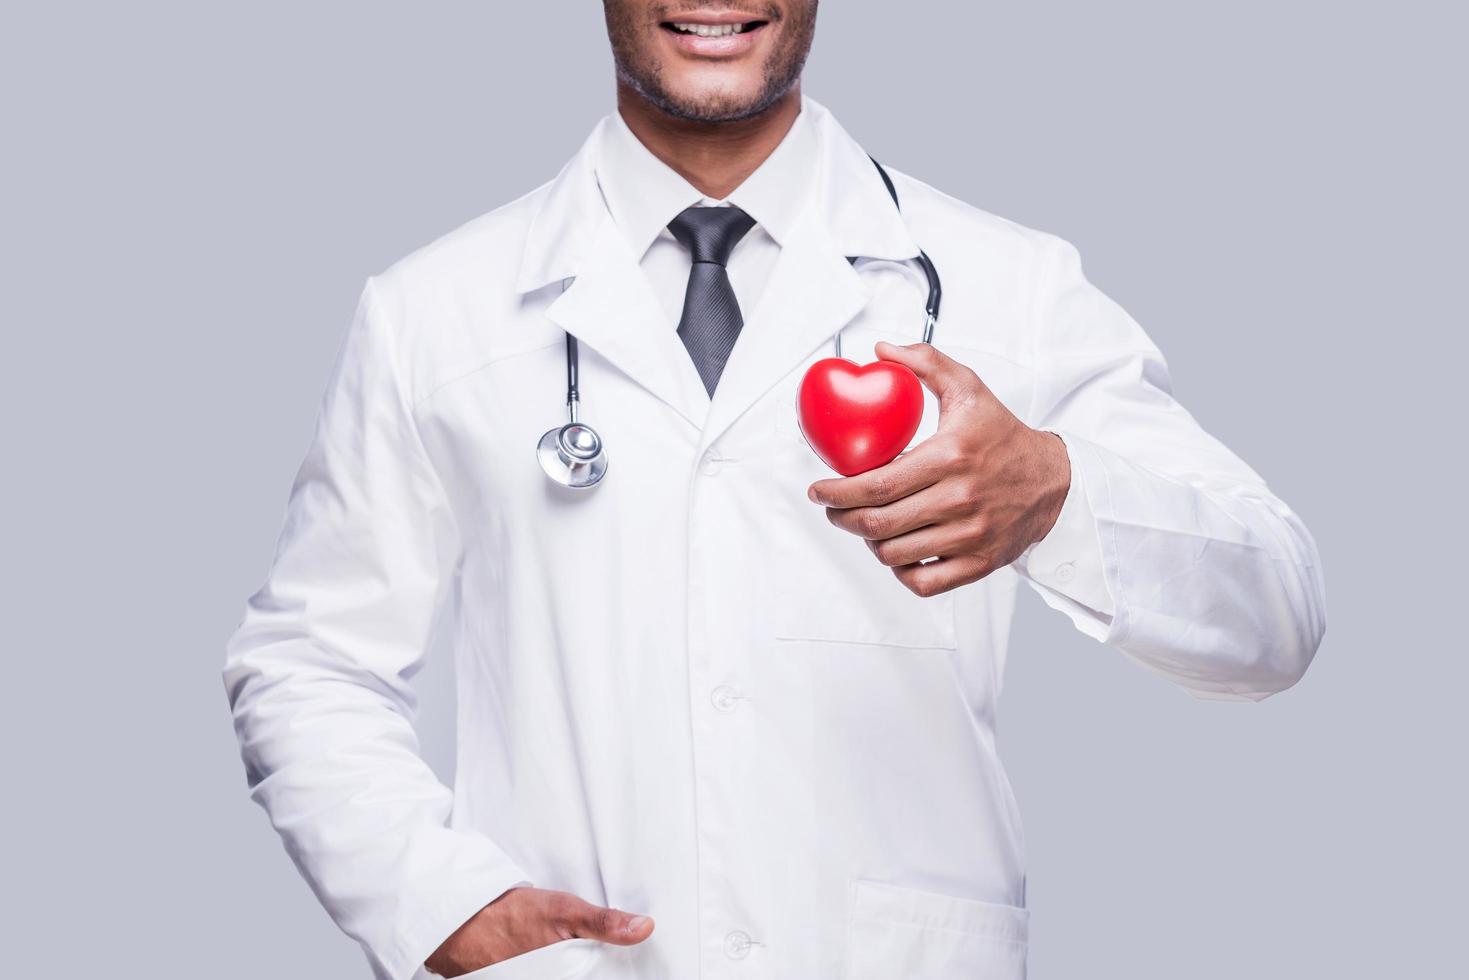 prendre soin de votre coeur. image recadrée d'un médecin africain confiant tenant un jouet en forme de coeur et souriant debout sur fond gris photo